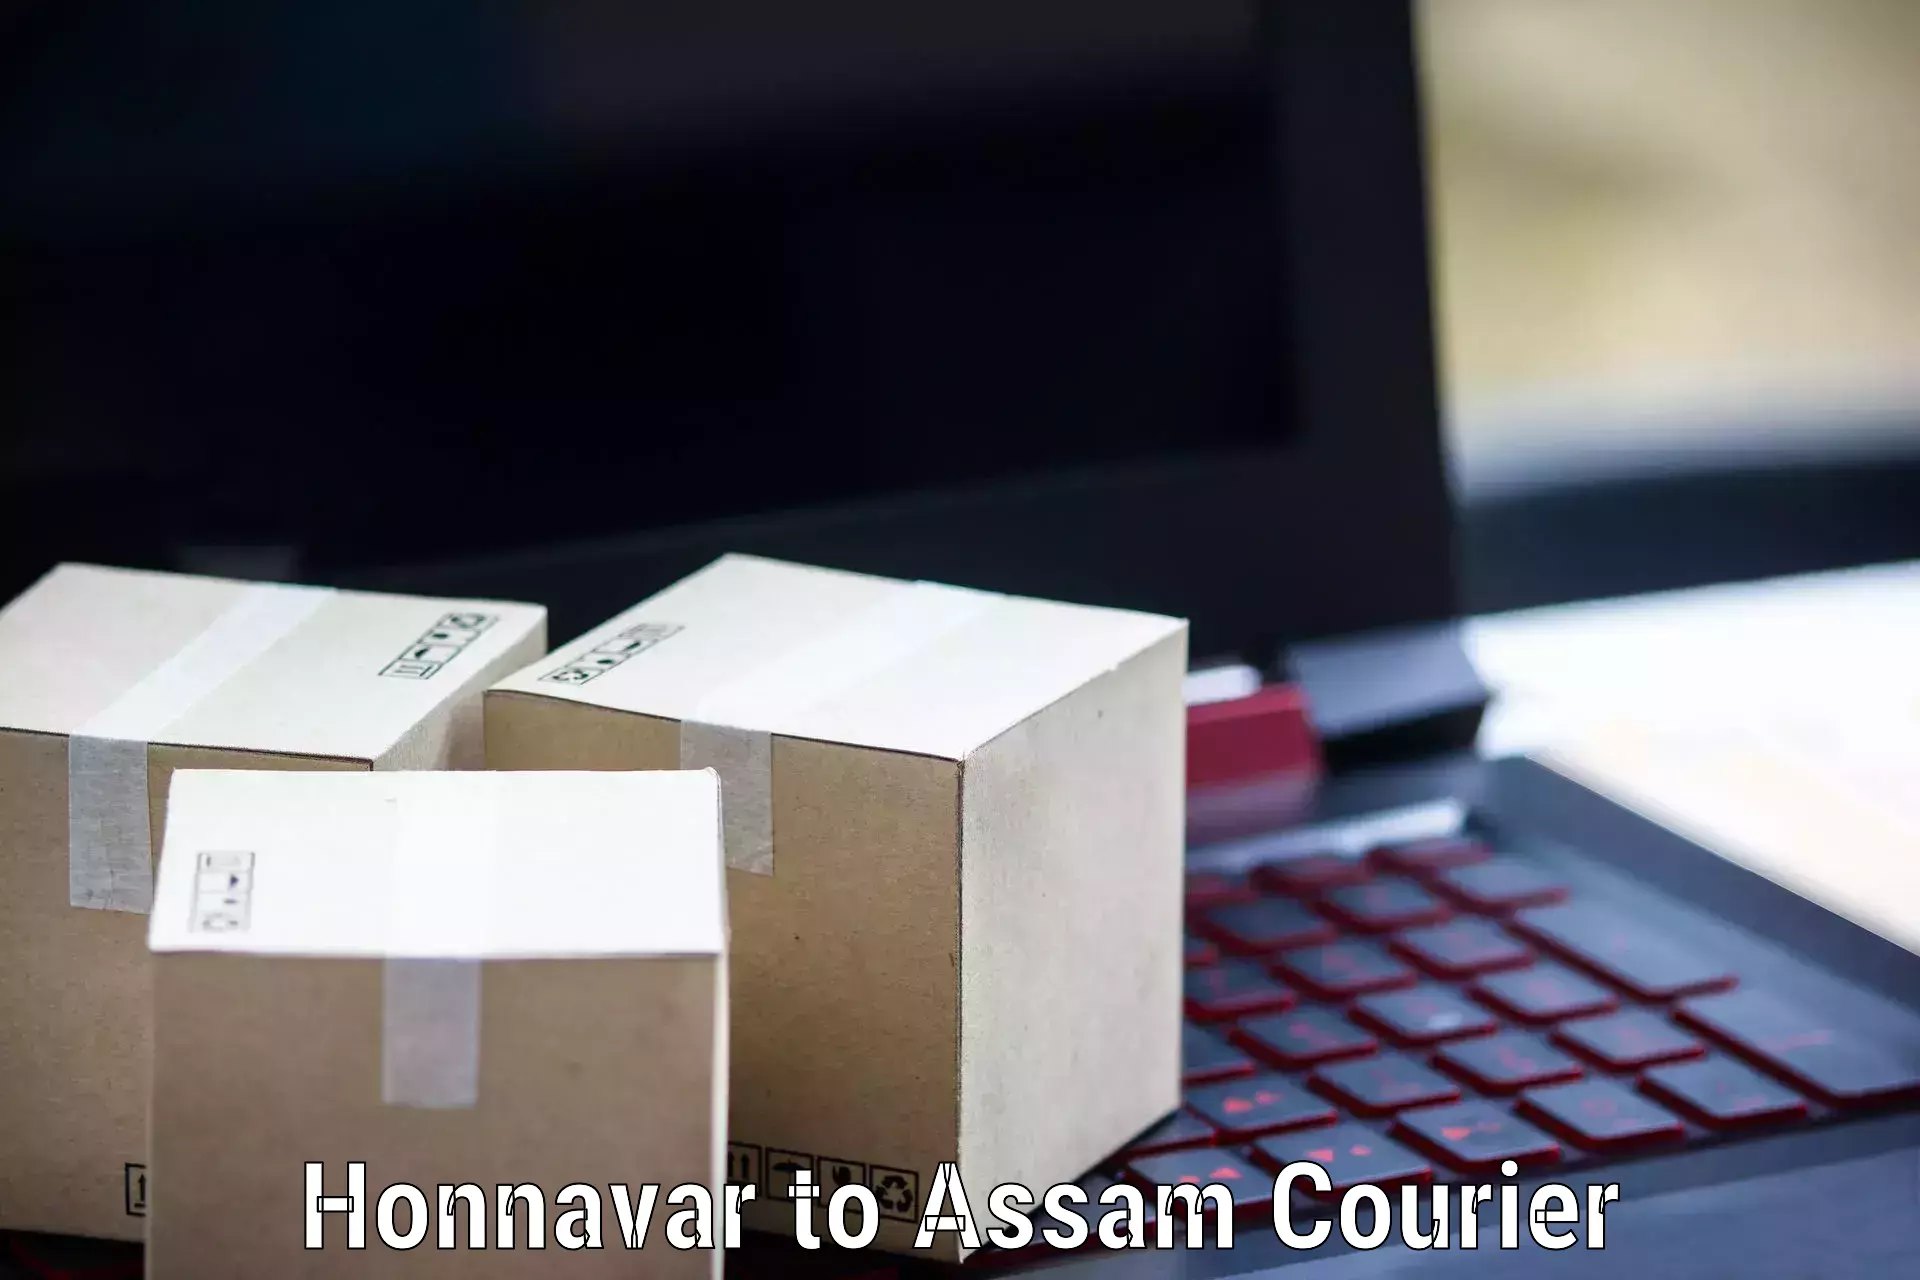 Tech-enabled shipping Honnavar to Lalapur Hailakandi